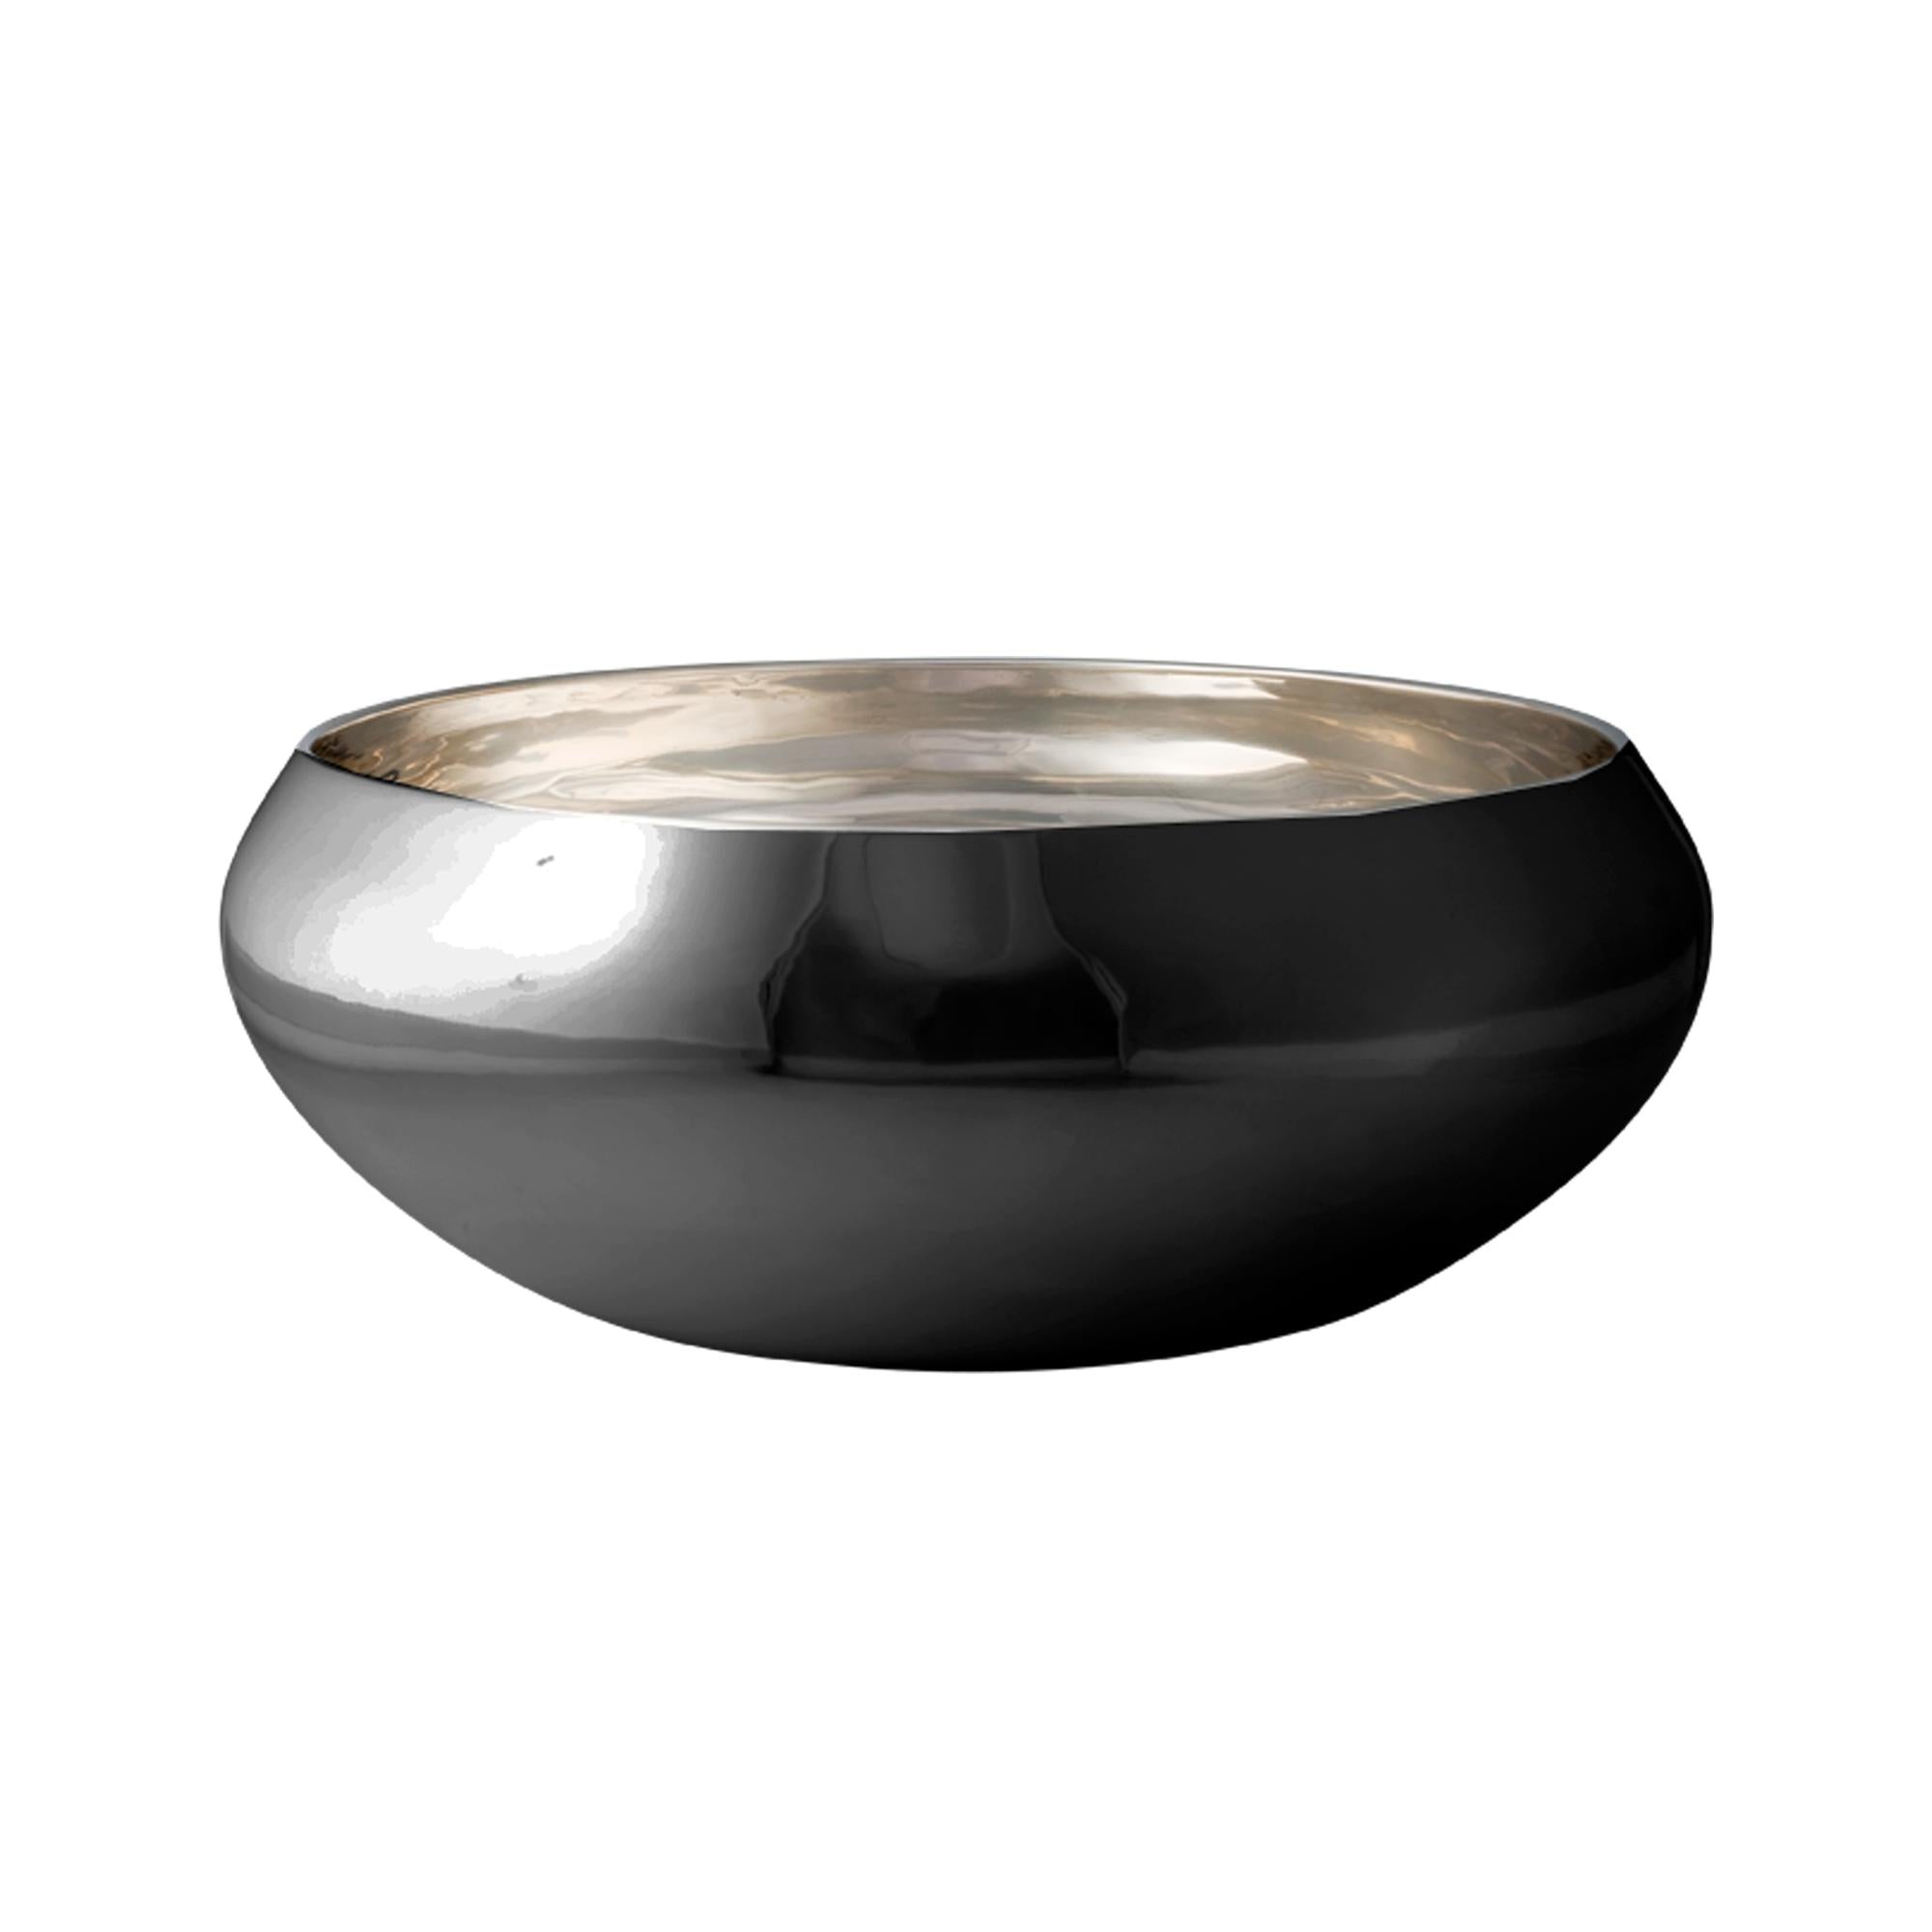 Kay Bojesen Nest Bowl由黑色钢制成，小